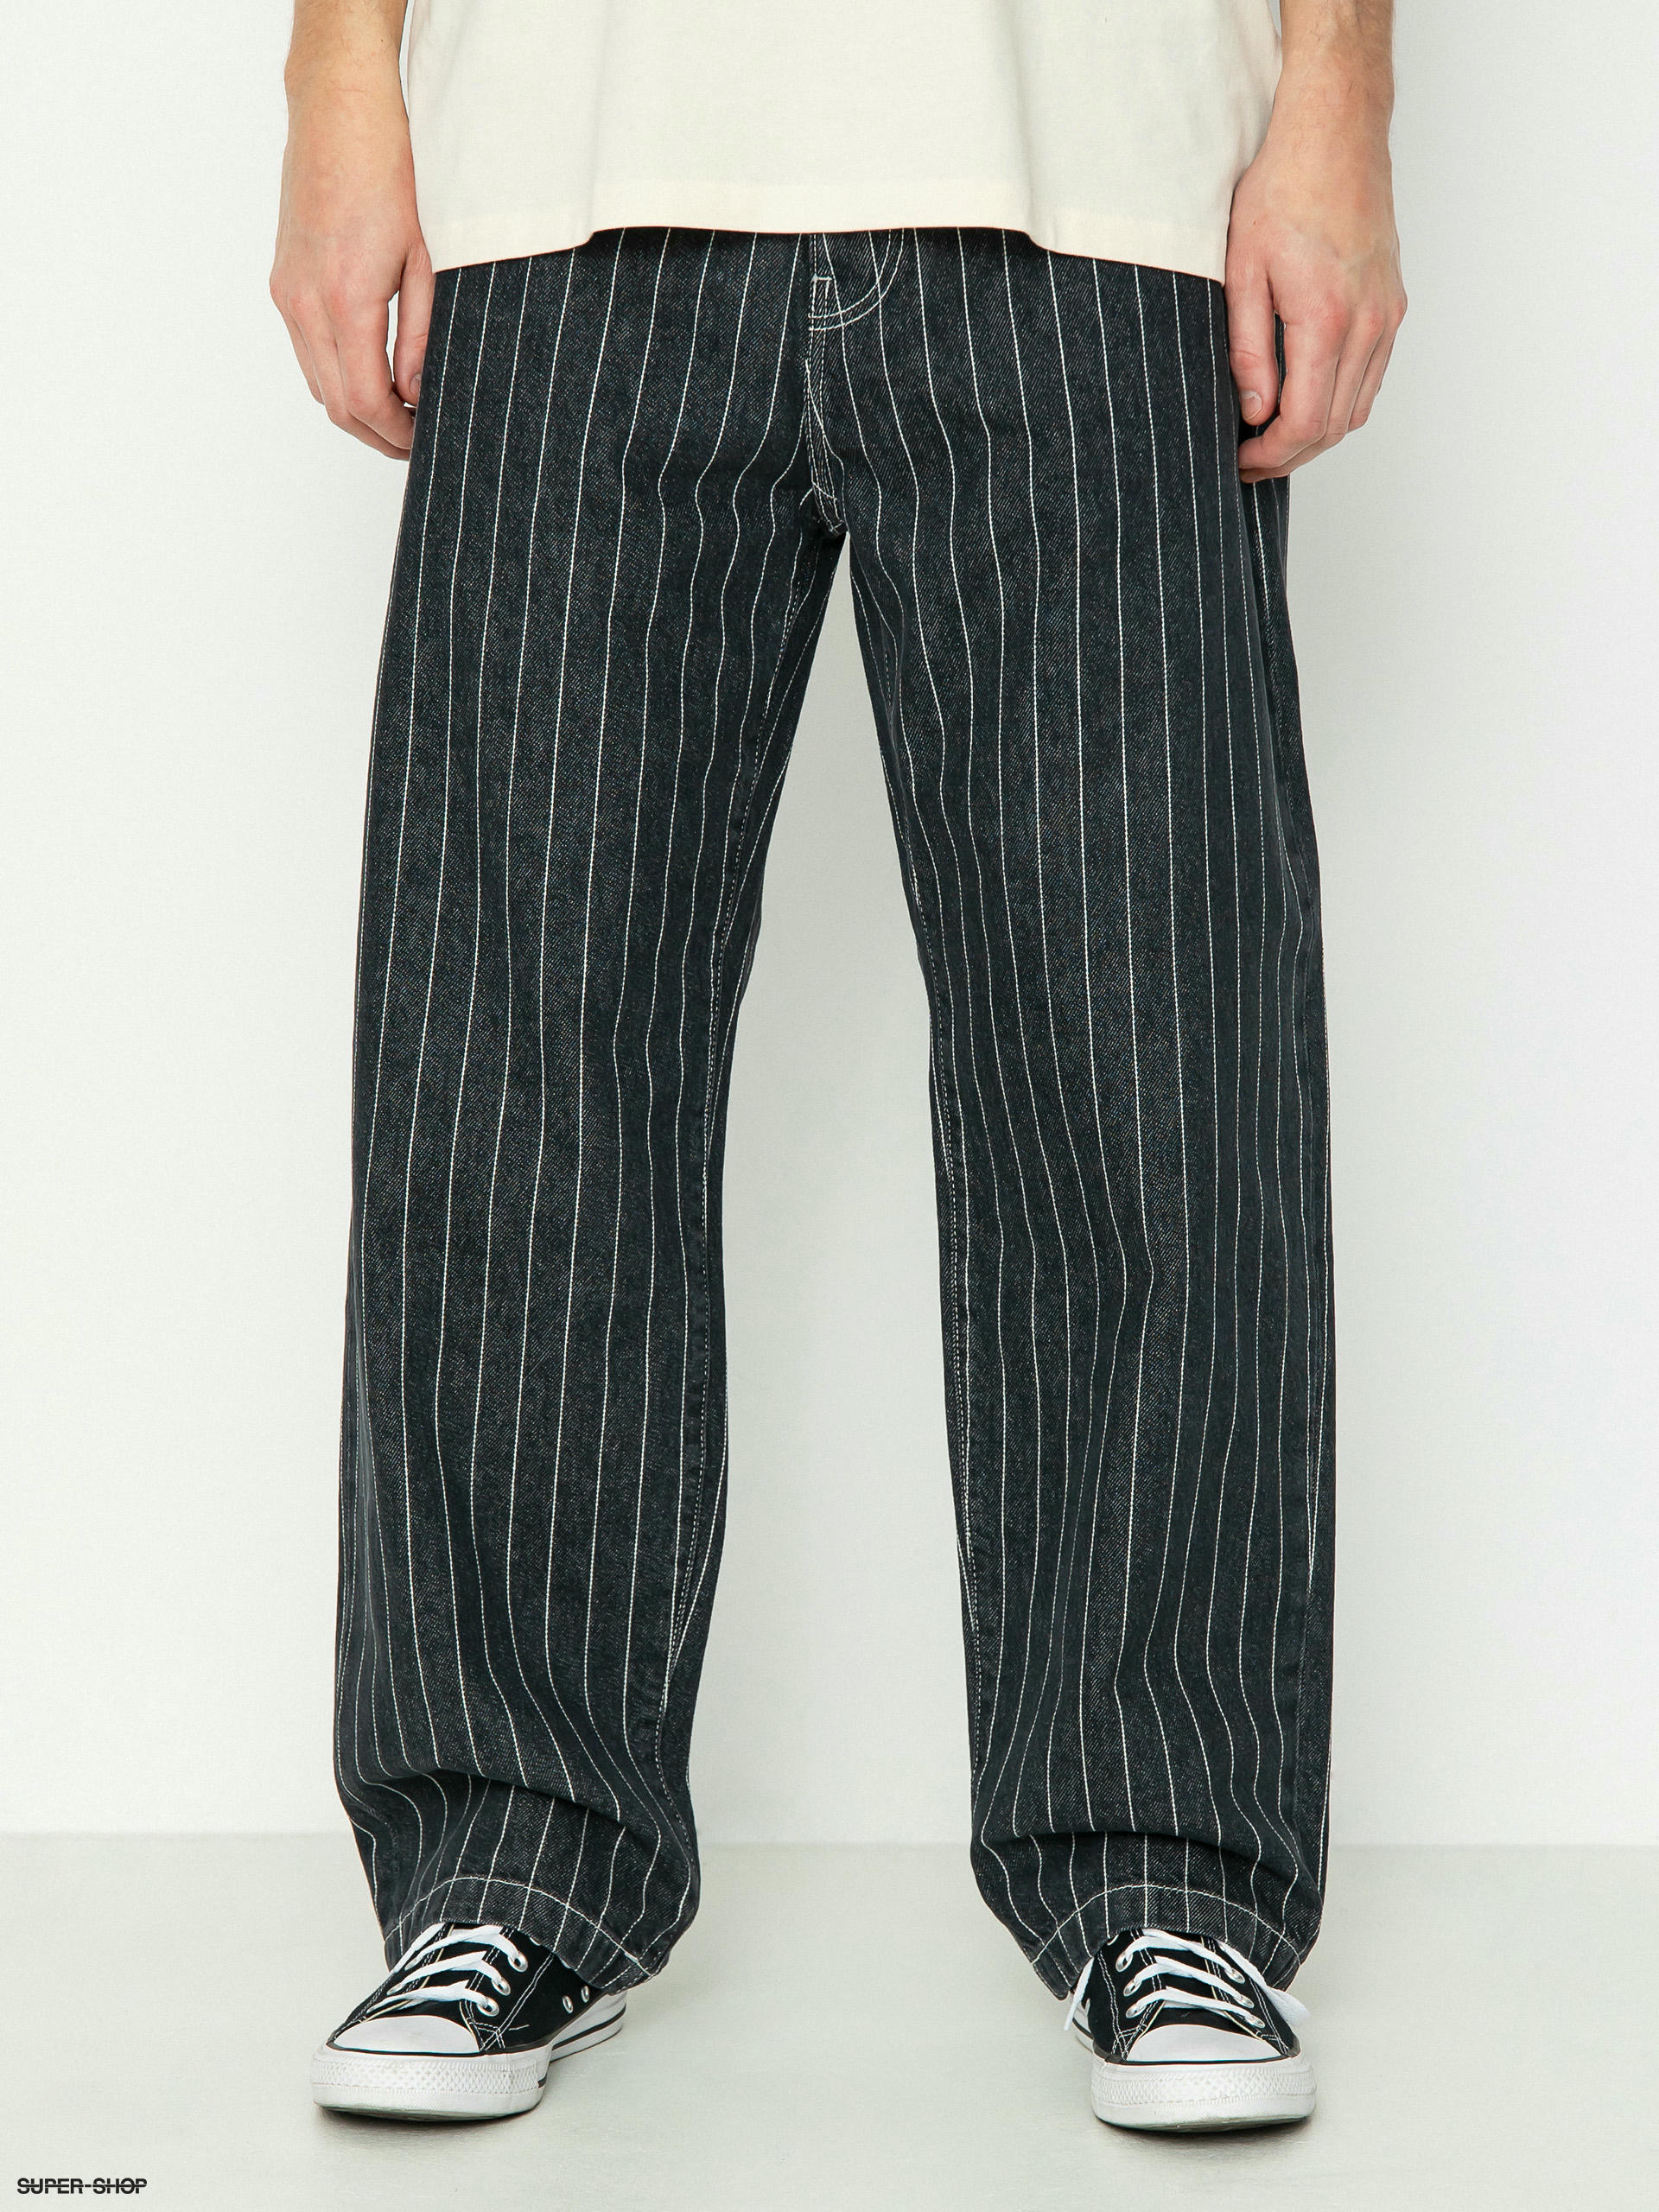 Carhartt WIP Orlean Pants (orlean stripe/black/white)